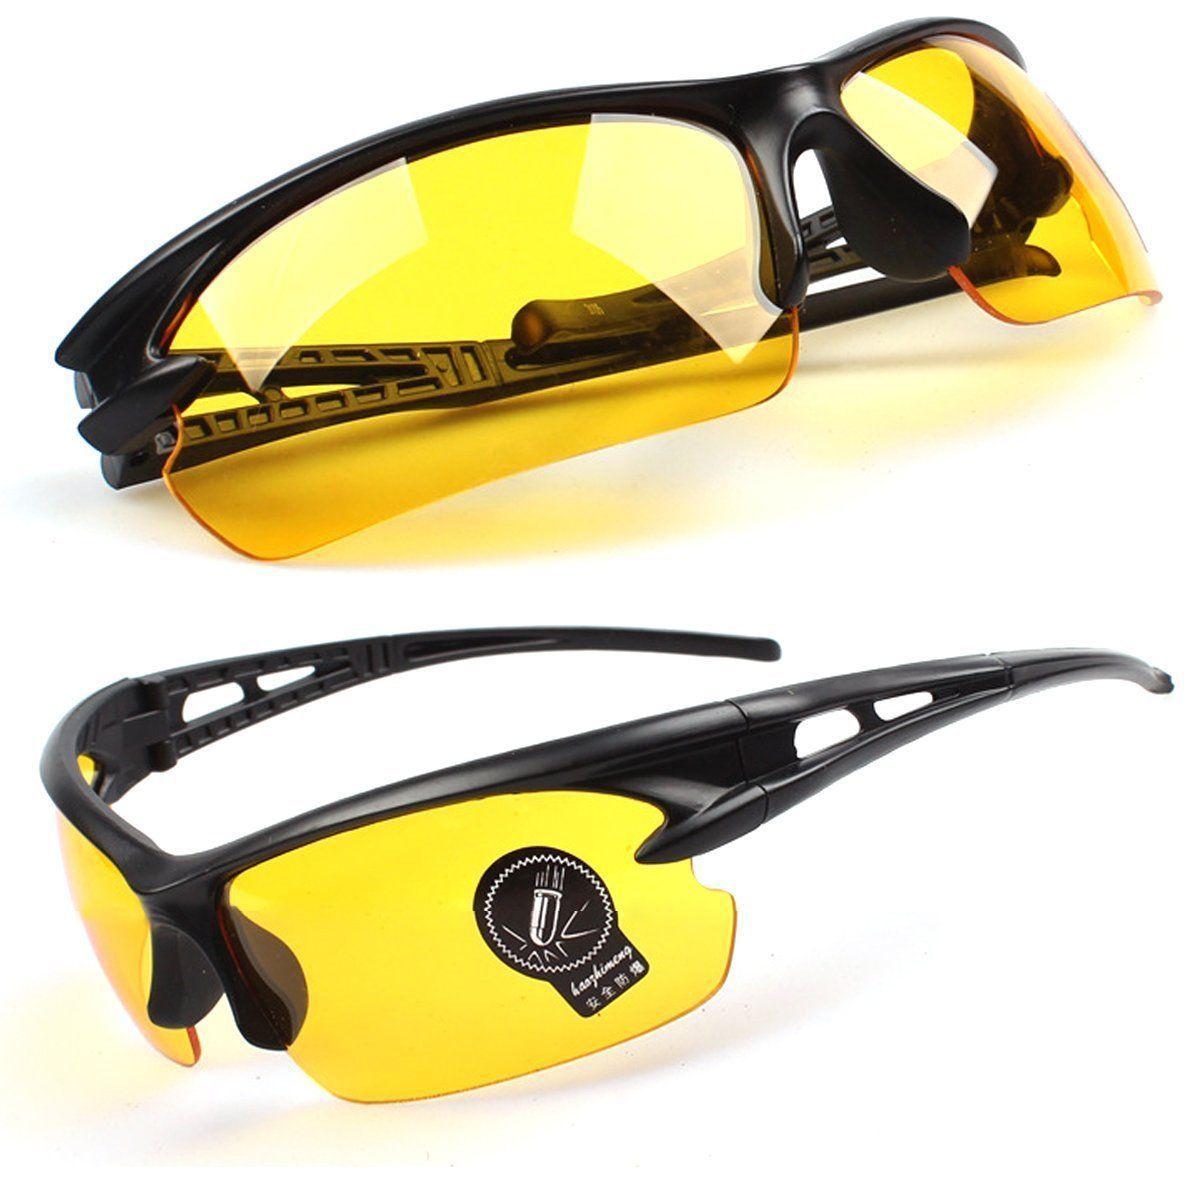 แว่นกันแดด เลนส์สีเหลือง แว่นกันแสงยูวี UV400 แว่นตาใส่ขี่จักรยาน ใส่เดินเล่น แว่นกันลม แว่นใส่ขับรถกลางคืน แถมฟรี!!! ผ้าเช็ดแว่น